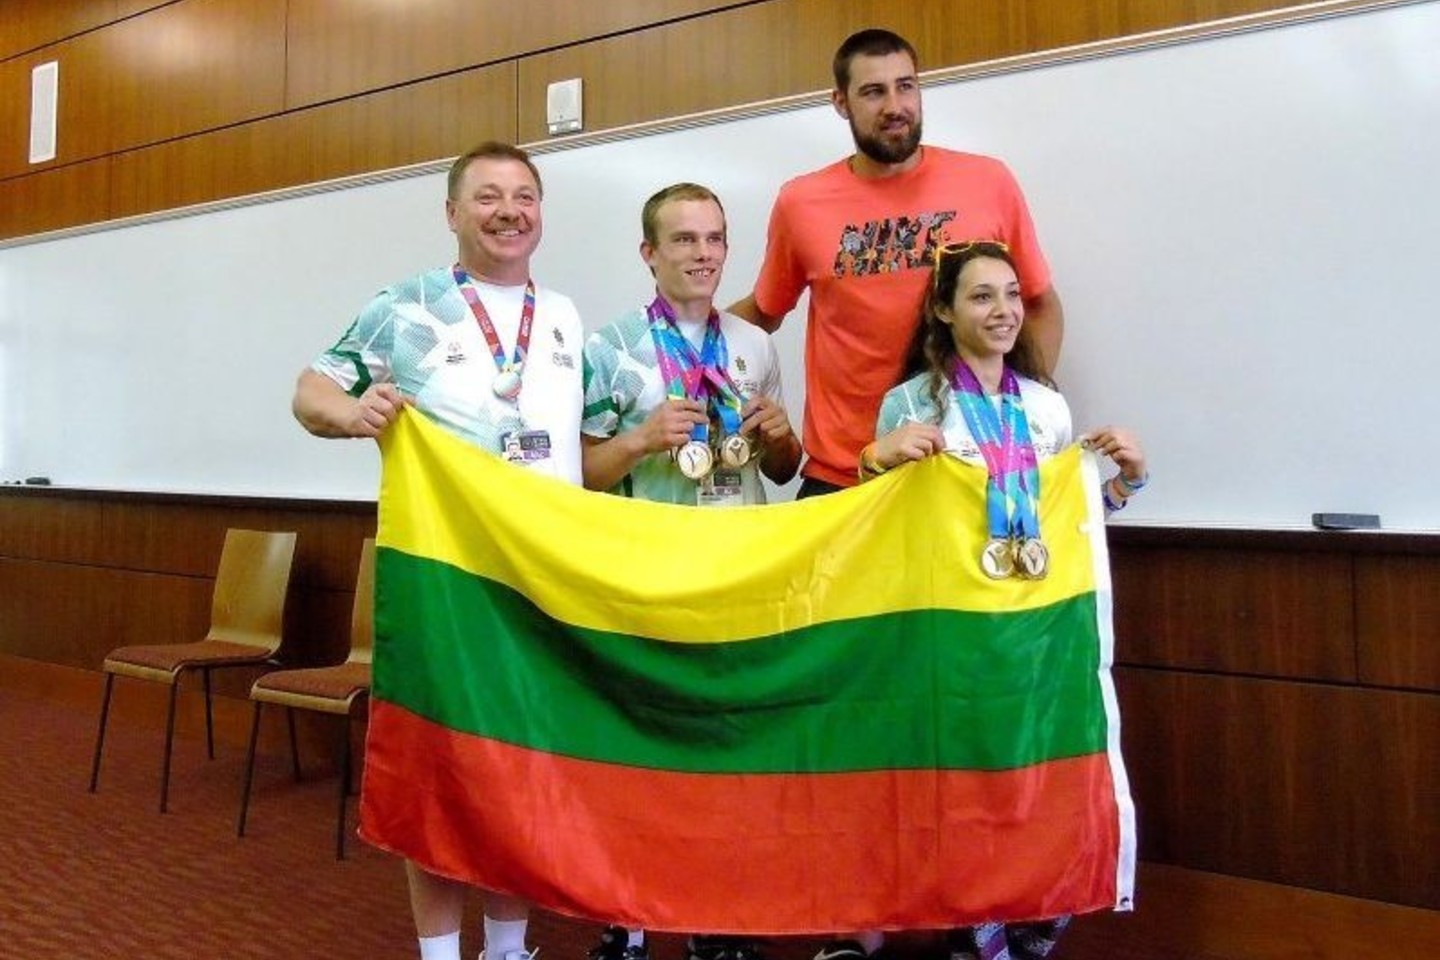 Obelių vaikų namuose užaugusi rumunės ir lietuvio dukra K.Kirilesku pasaulio specialiosiose olimpinėse žaidynėse Amerikoje susižėrė keturgubą auksą ir tapo žvaigžde.<br>A.Švelnos, panskliautas.lt nuotr.